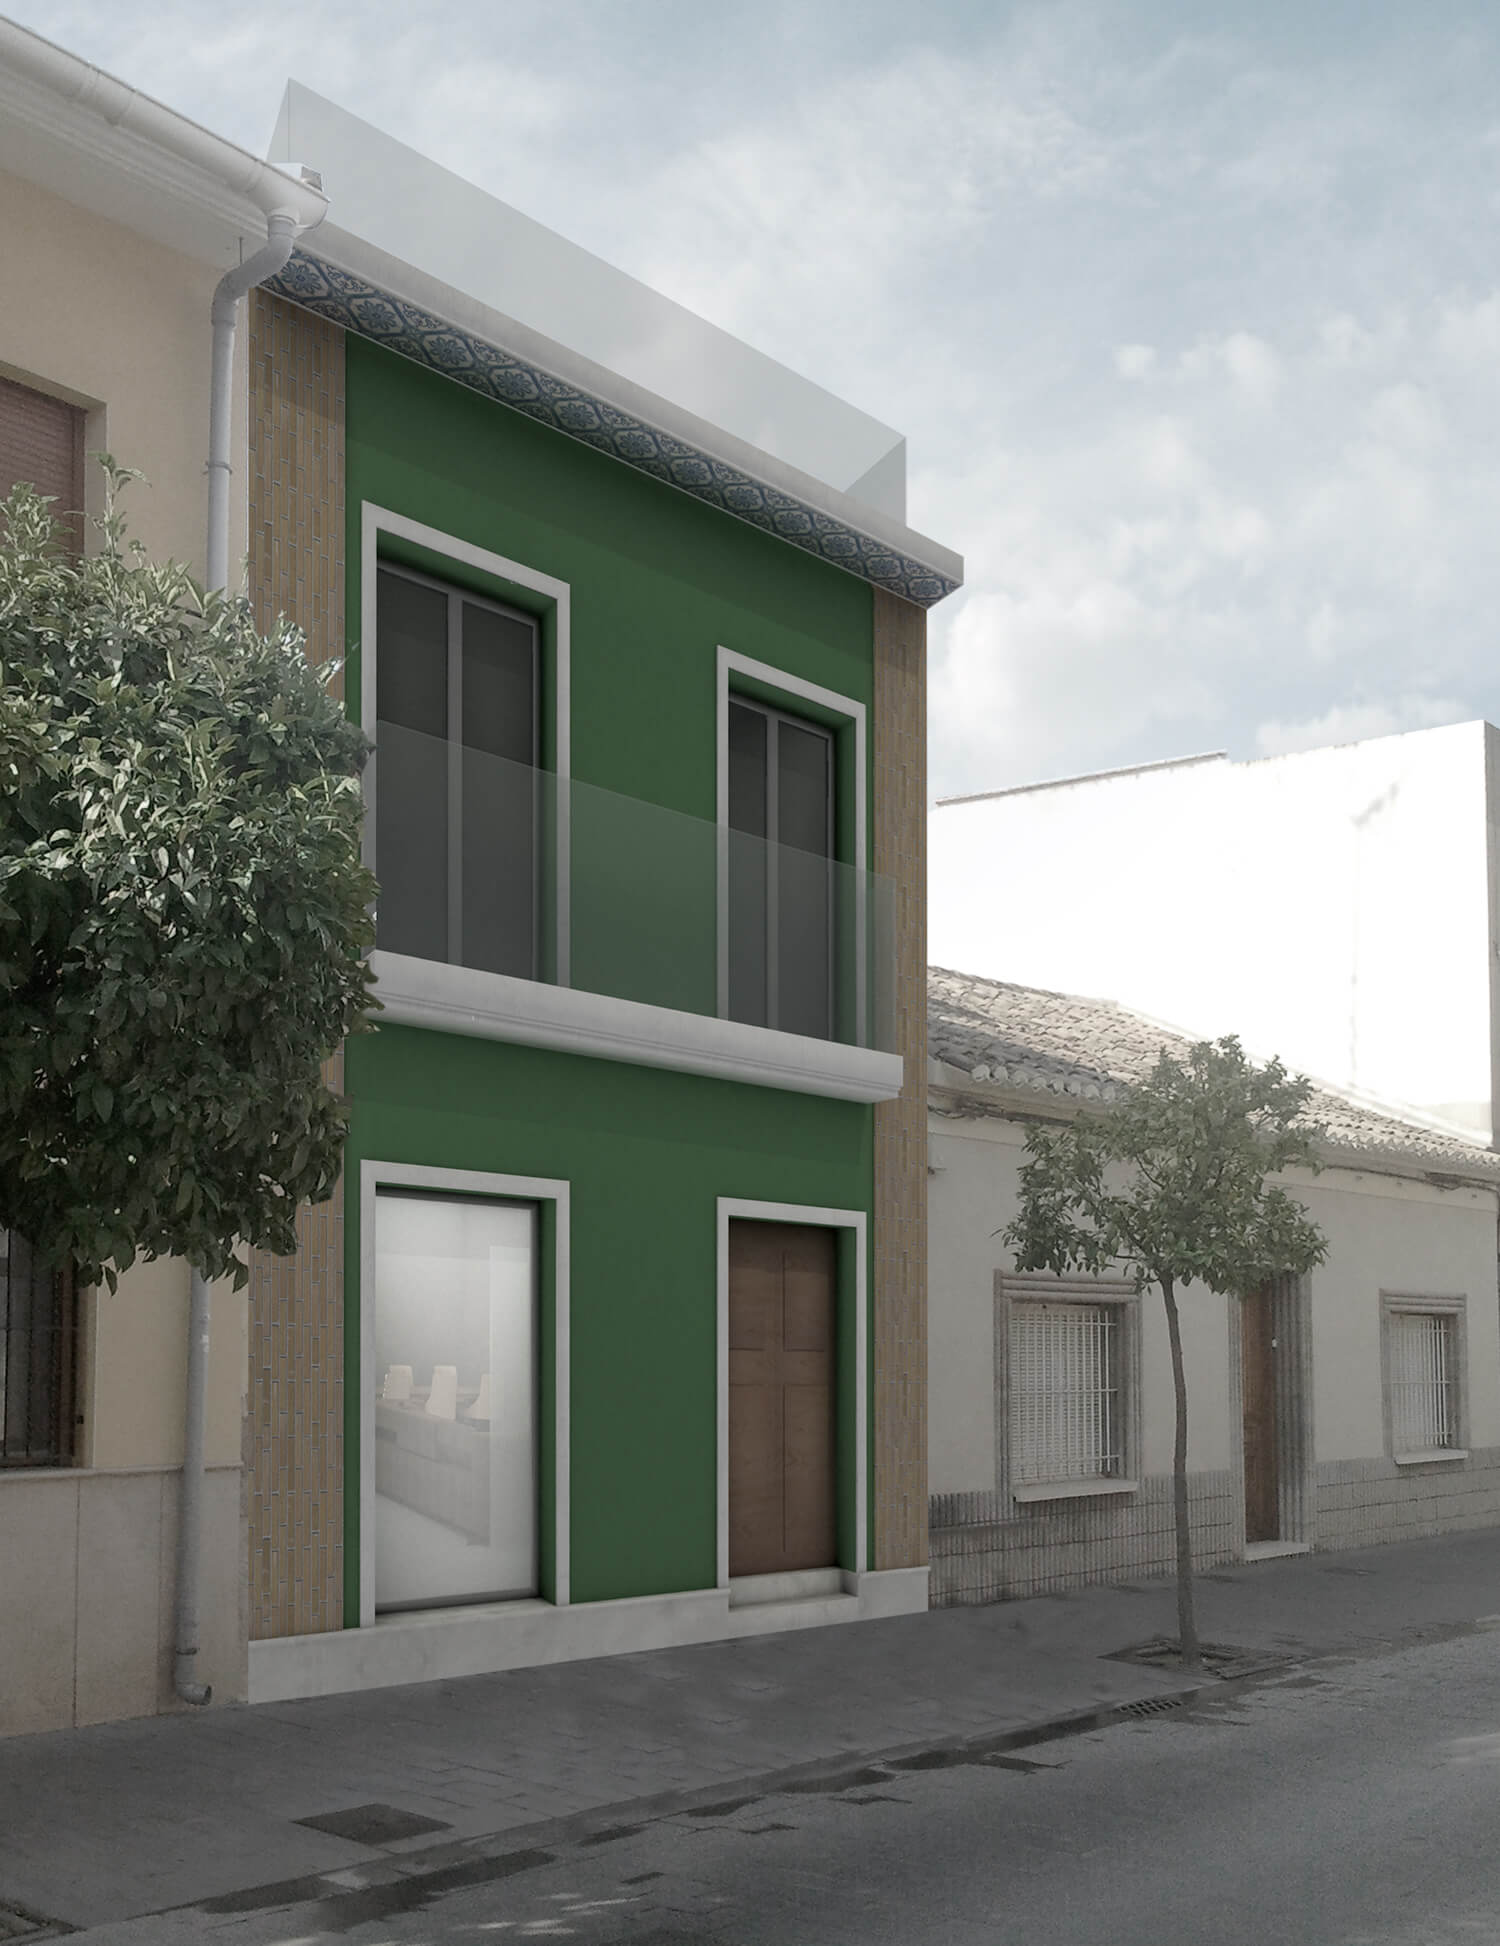 Proyecto de vivienda unifamiliar en San Vicente. Fachada